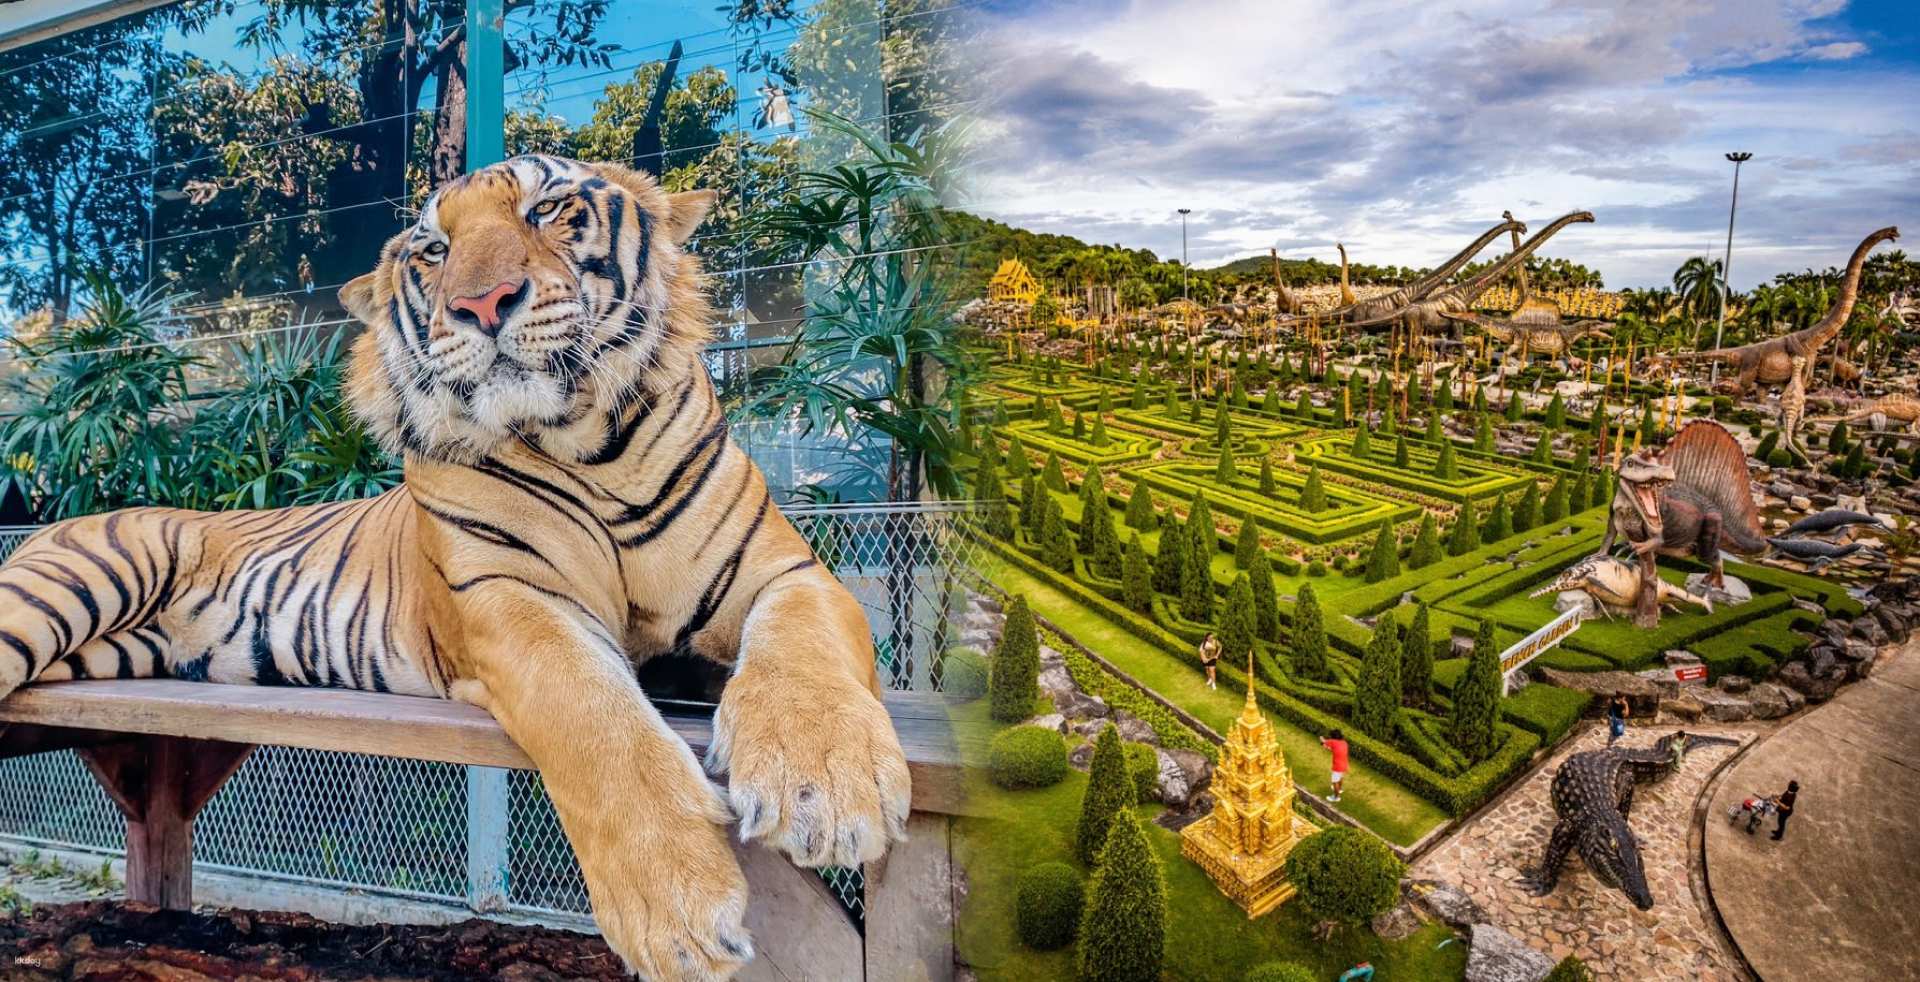 泰國-芭達雅老虎公園&東巴熱帶花園組合套票| 含老虎體驗